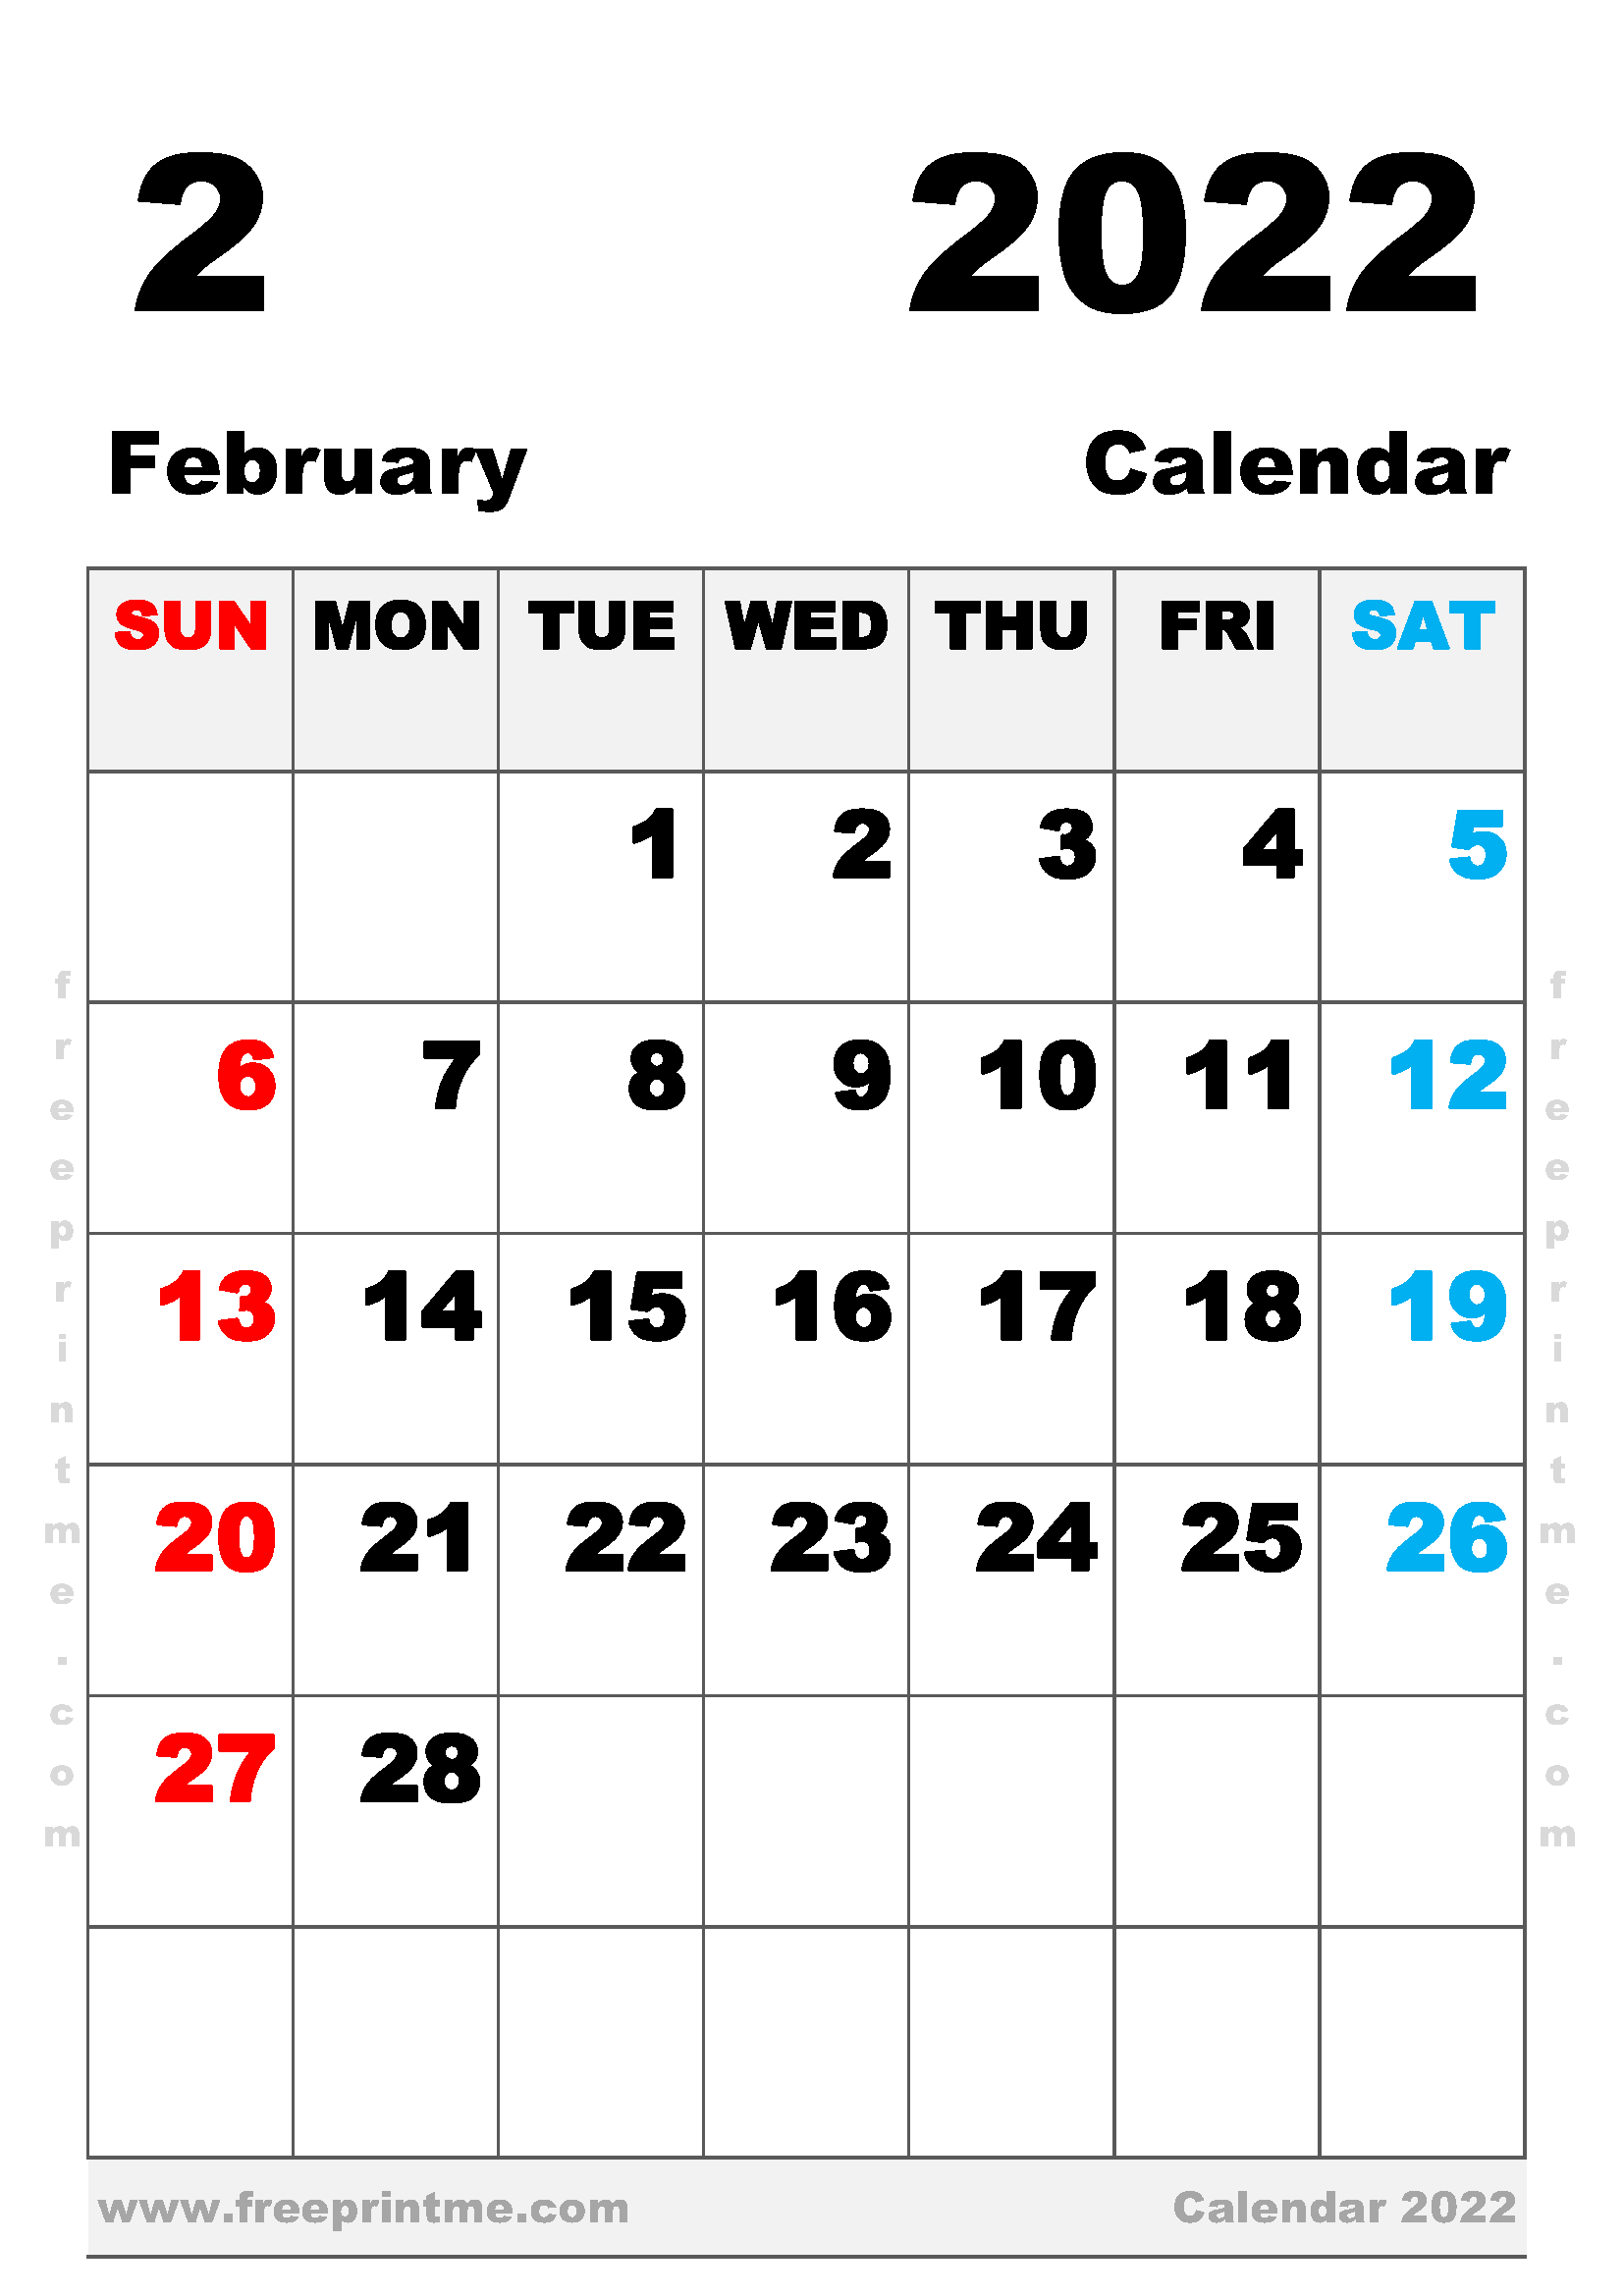 Febrero 2022 Calendar Free Printable February 2022 Calendar A4